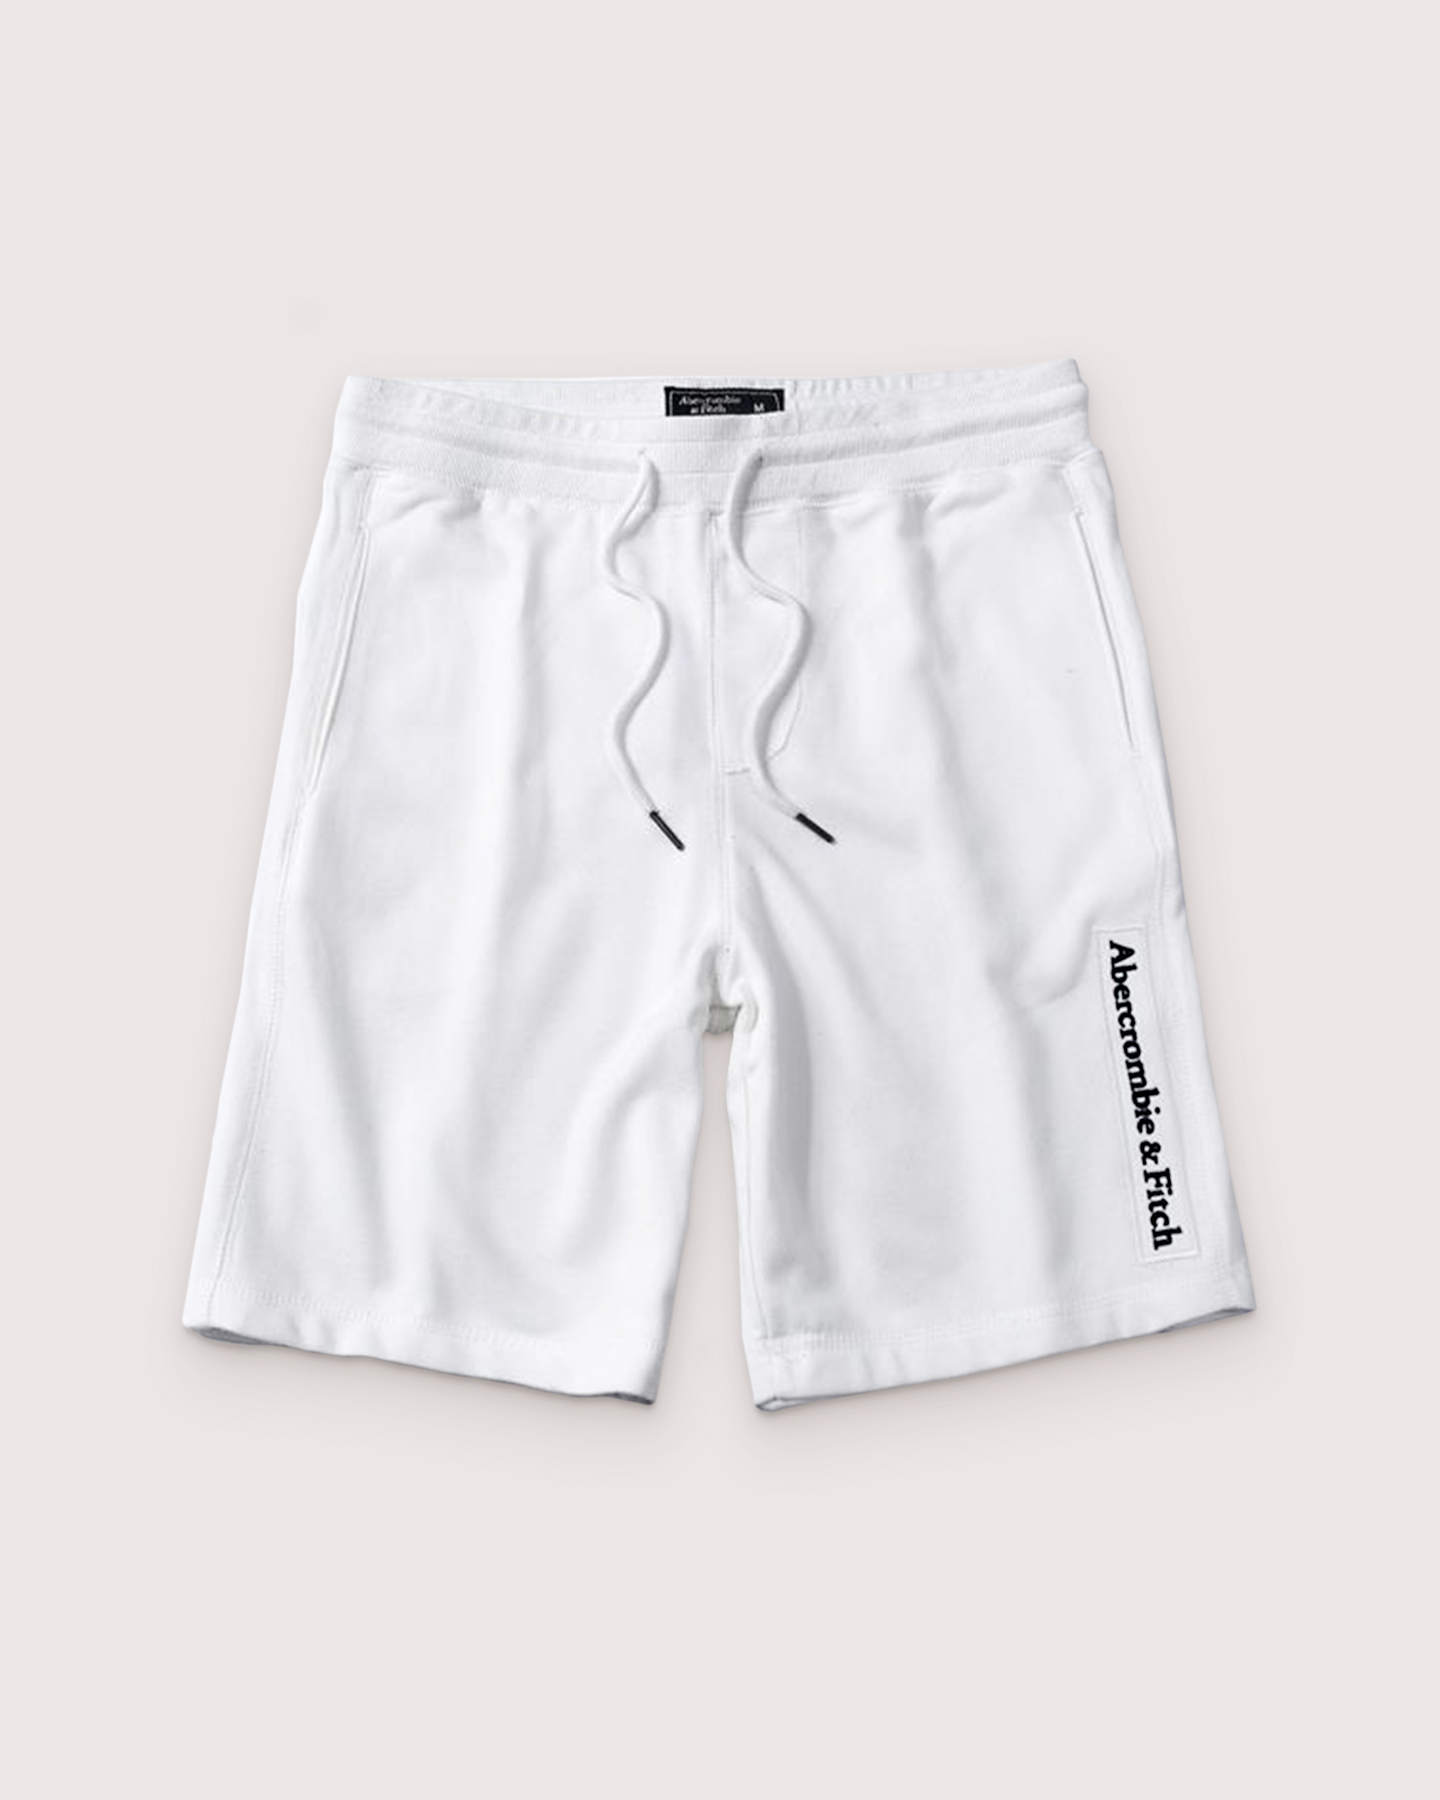 Белые шорты с логотипом S15 S15 от онлайн-магазина Abercrombie.ru